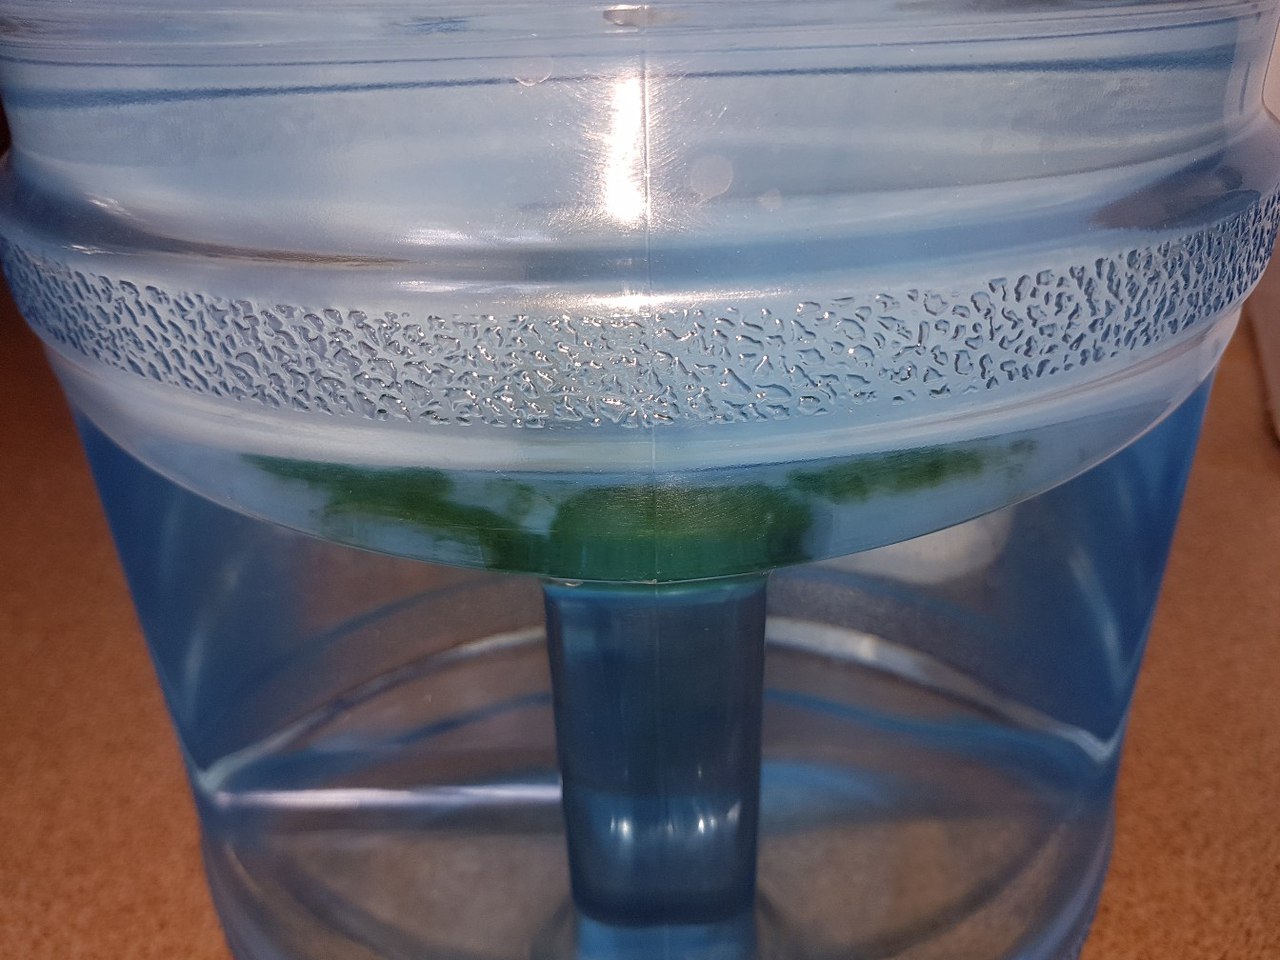 Вода в фильтре зеленеет. Вода позеленела в бутылке. Бутыль зеленый с водой. Бутылка с позеленевшей водой. Плесень в воде в бутылке.